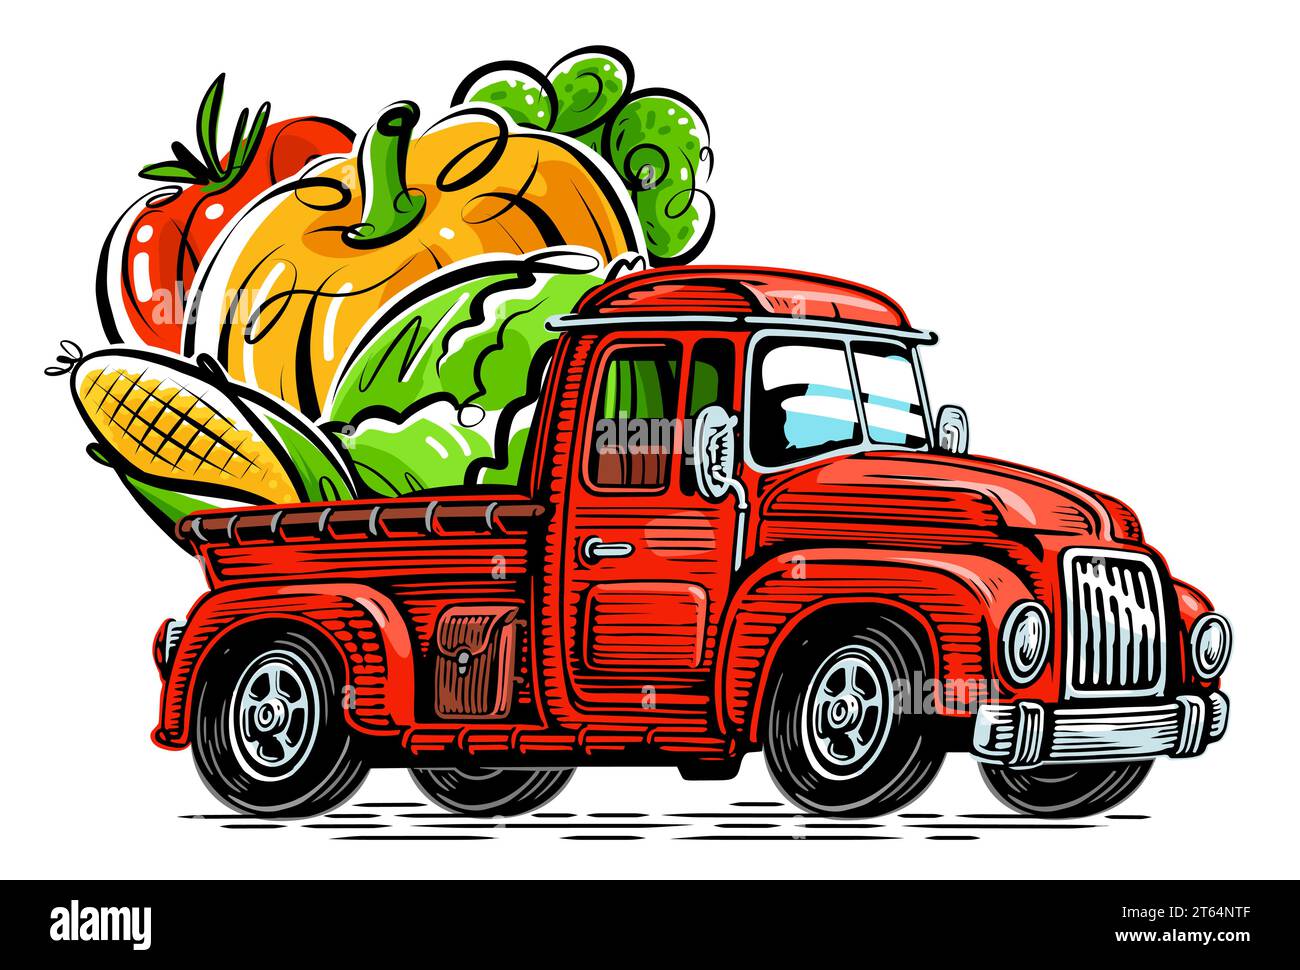 Der Bauer fährt in einem mit Bio-Lebensmitteln beladenen LKW. Illustration des Farm-Vektors Stock Vektor